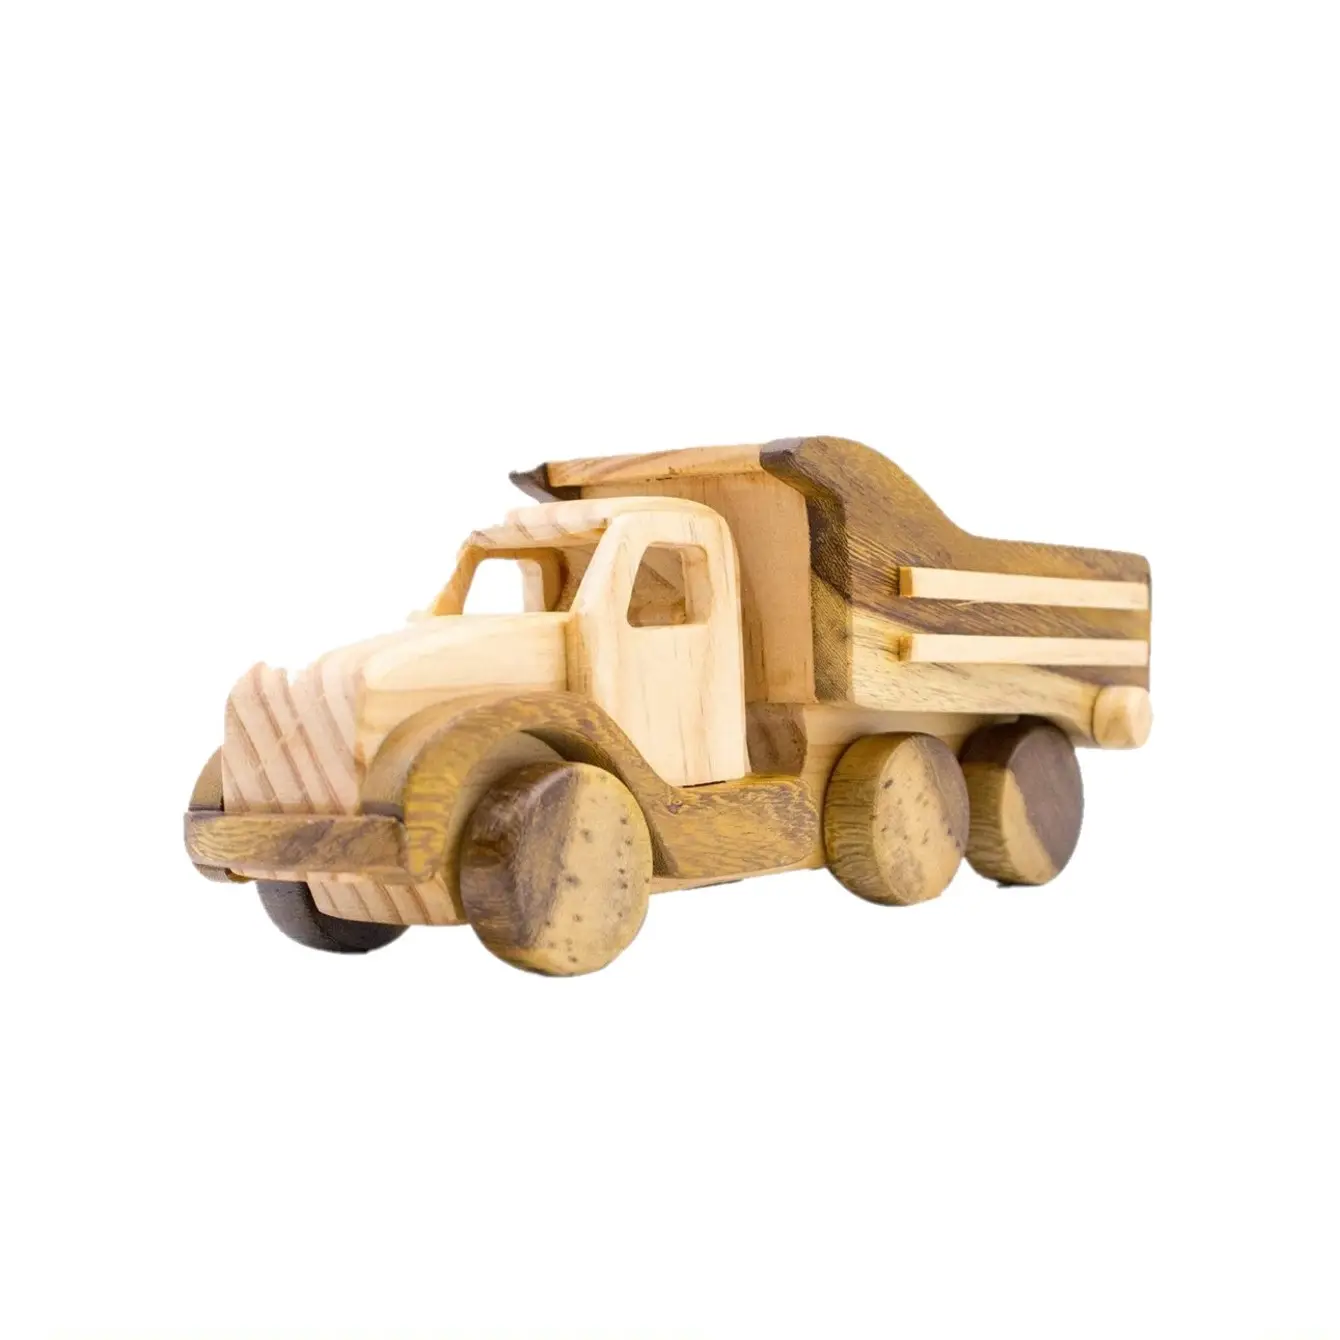 Modelo de contenedor de camión de madera, vehículos de transporte, juguetes educativos para niños, artesanías hechas a mano de alta calidad Natural